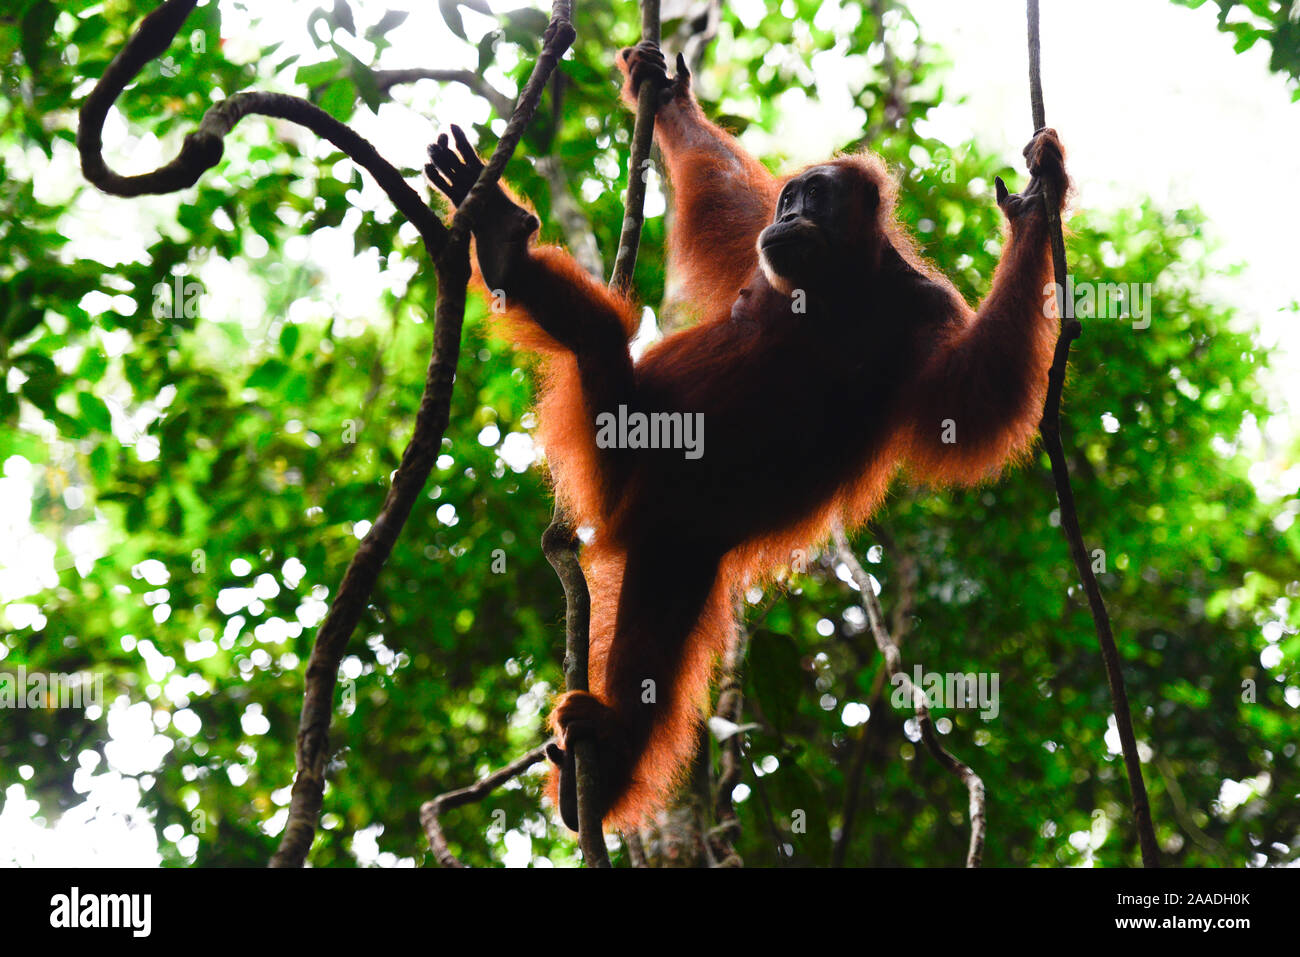 L'orang-outan de Sumatra (Pongo abelii) féminin se déplaçant entre les lianes, parc national de Gunung Leuser, UNESCO World Heritage site, novembre. Banque D'Images